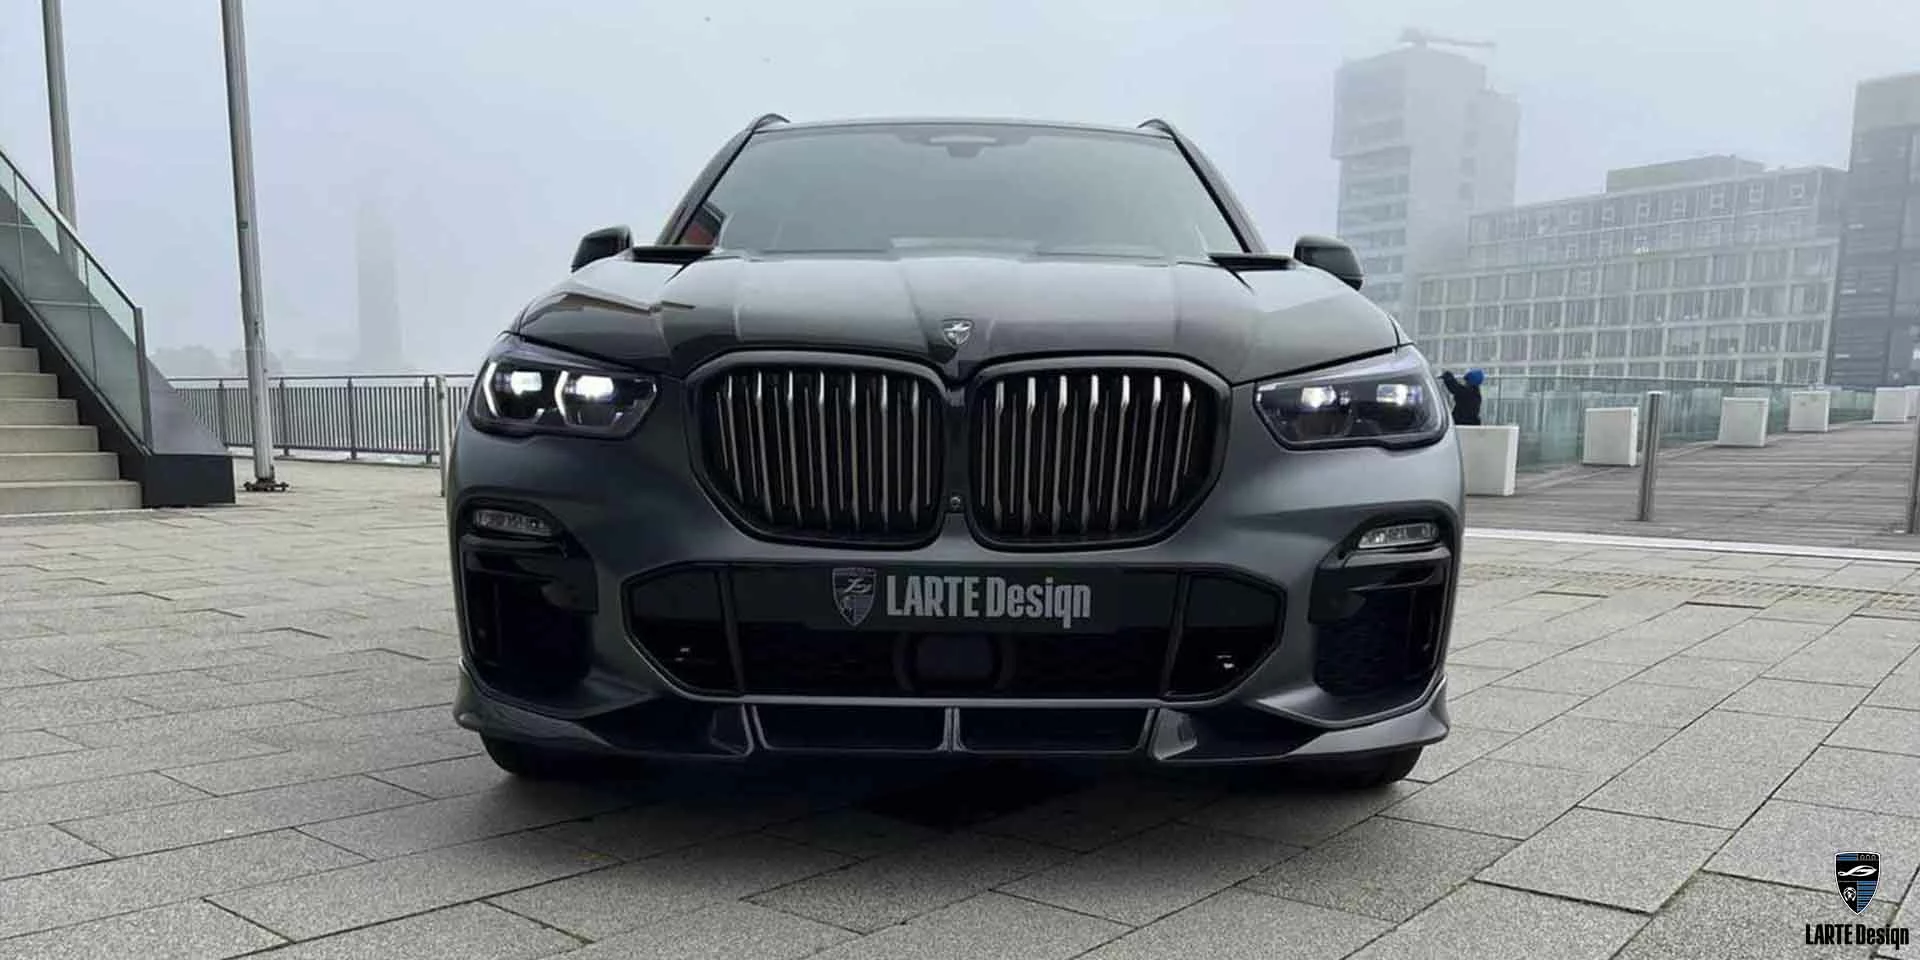 Kaufen Sie einen Frontstoßstangen-Splitter aus Kohlefaser für den BMW X5 M Sport G05 M50d in Schwarz-Saphir-Metallic